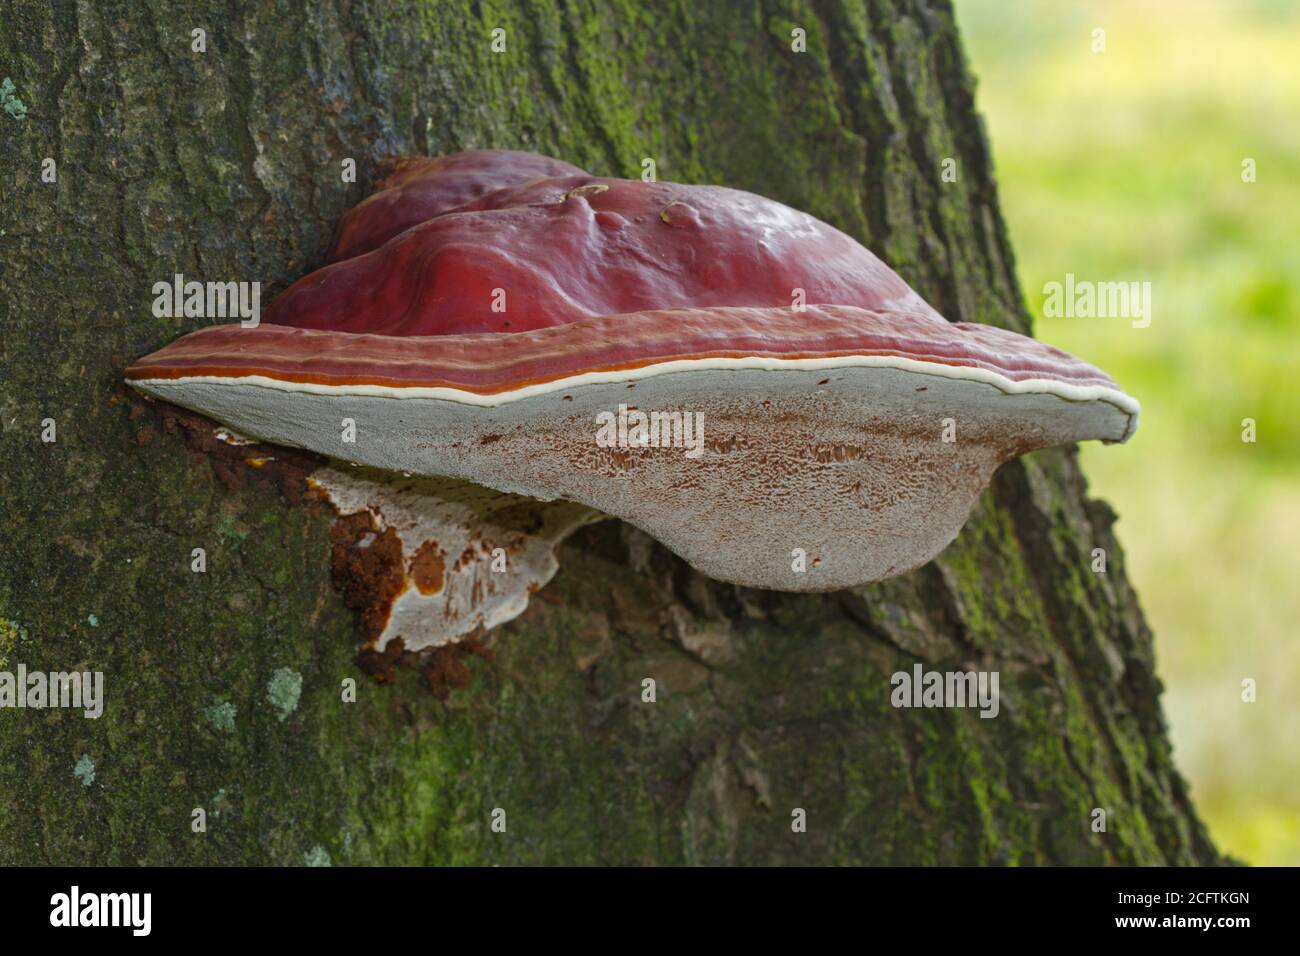 Schöner rotbrauner Fruchtkörper von Ganoderma lucidum auf einer Eiche Baum Stockfoto